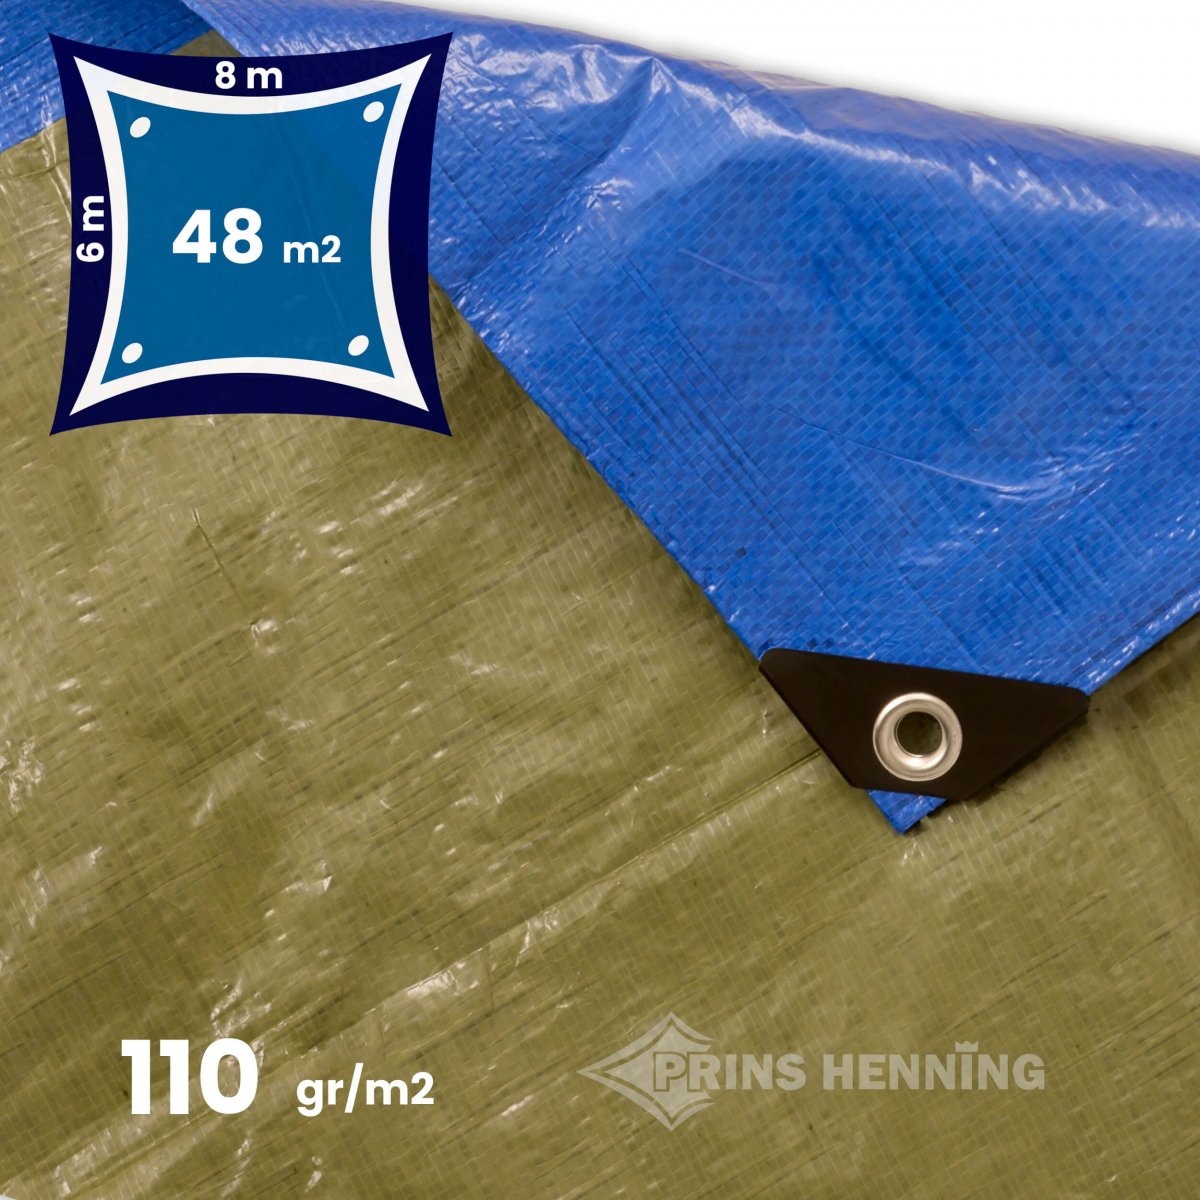 Grisling Sprællemand tempo Standard presenning, 6x8 meter, blå/grøn, 110 gr/m2 - Billige Presenninger  - Prins Henning v/DKTEX ApS